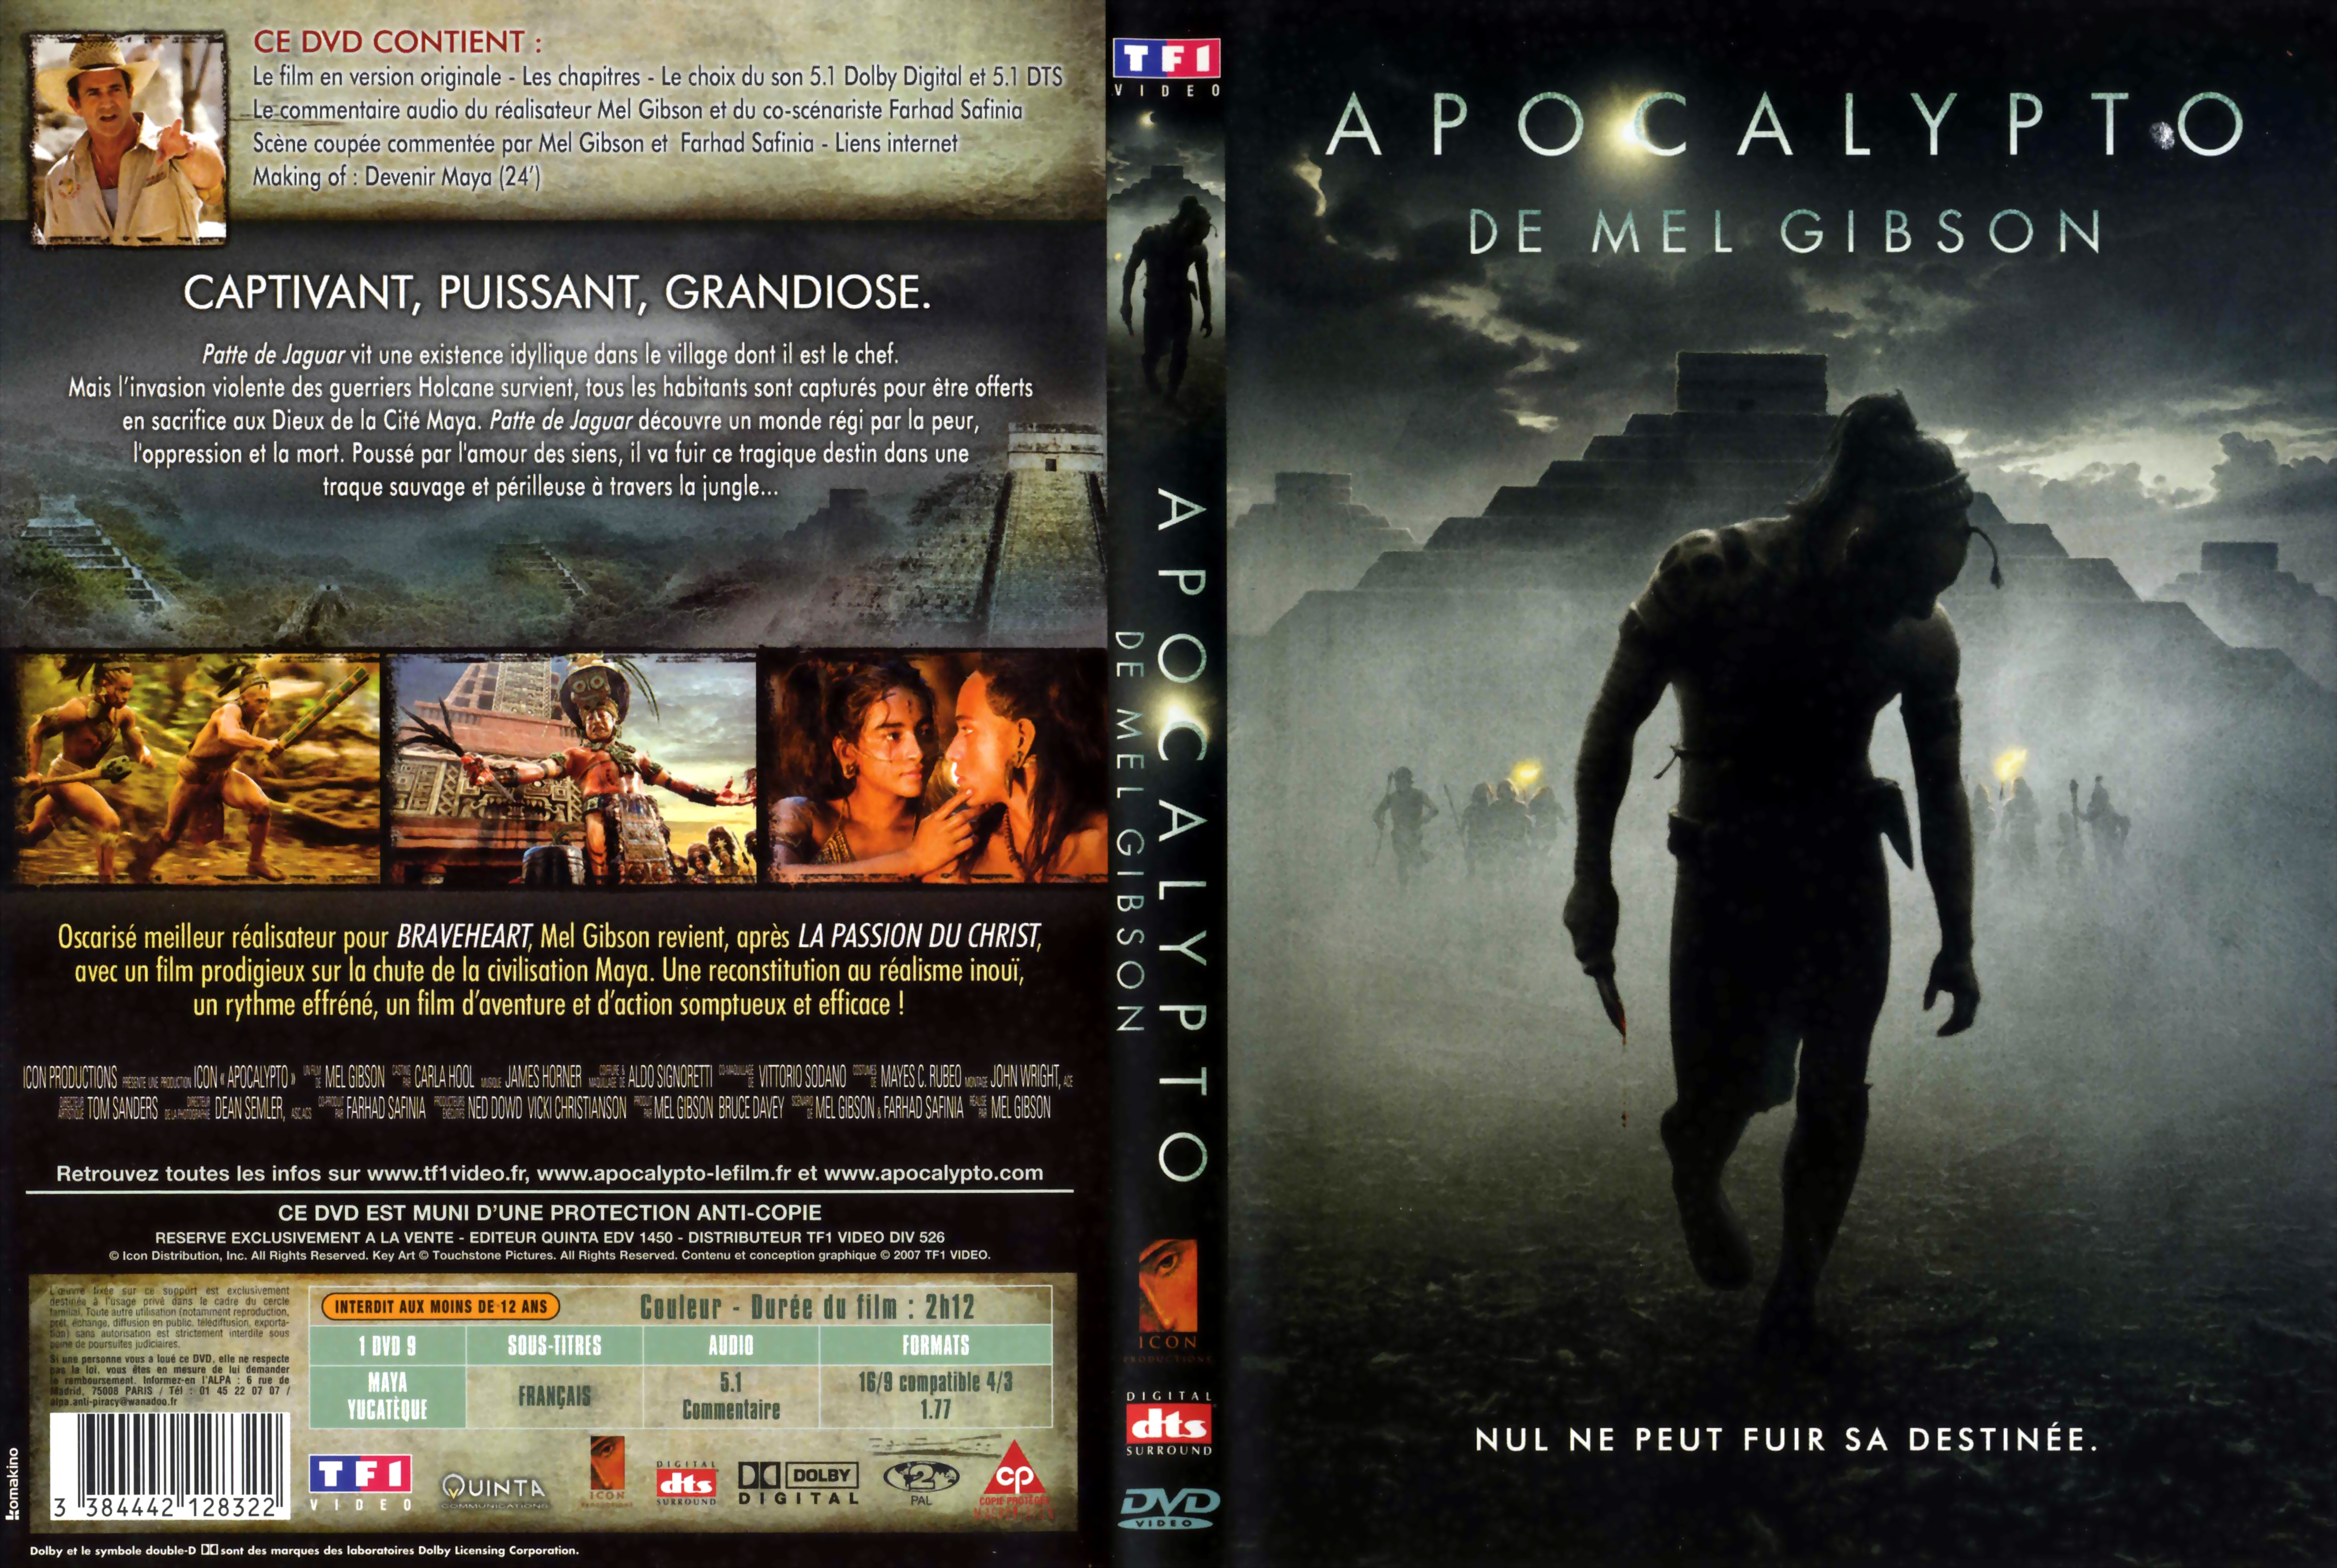 Jaquette DVD Apocalypto v3